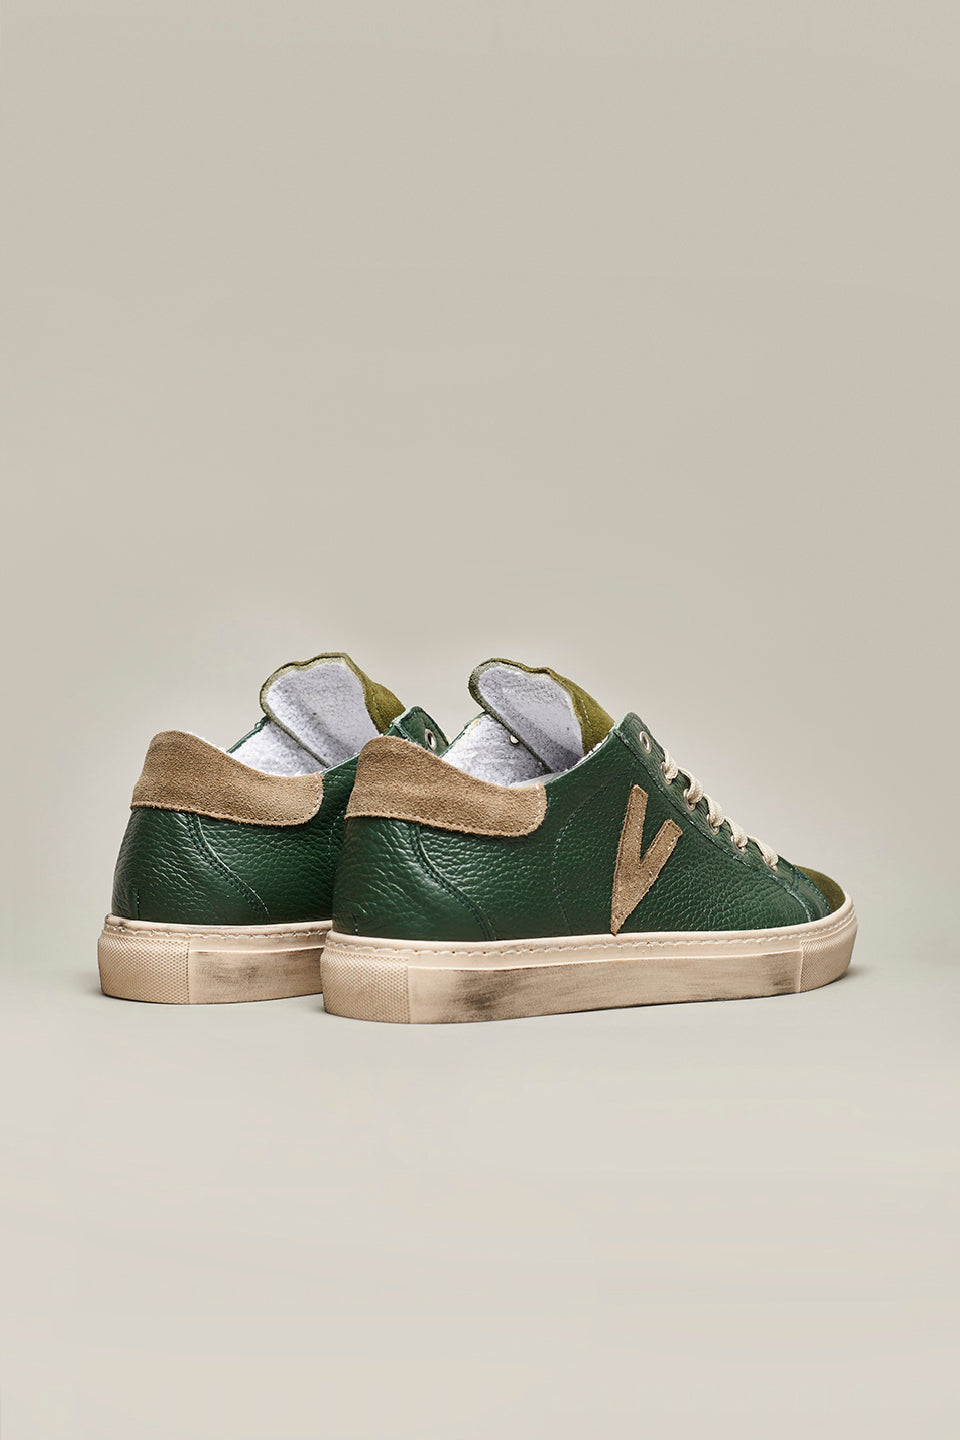 OLYMPIC - Sneakers a suola bassa in pelle martellata Verde con retro e inserto Moro